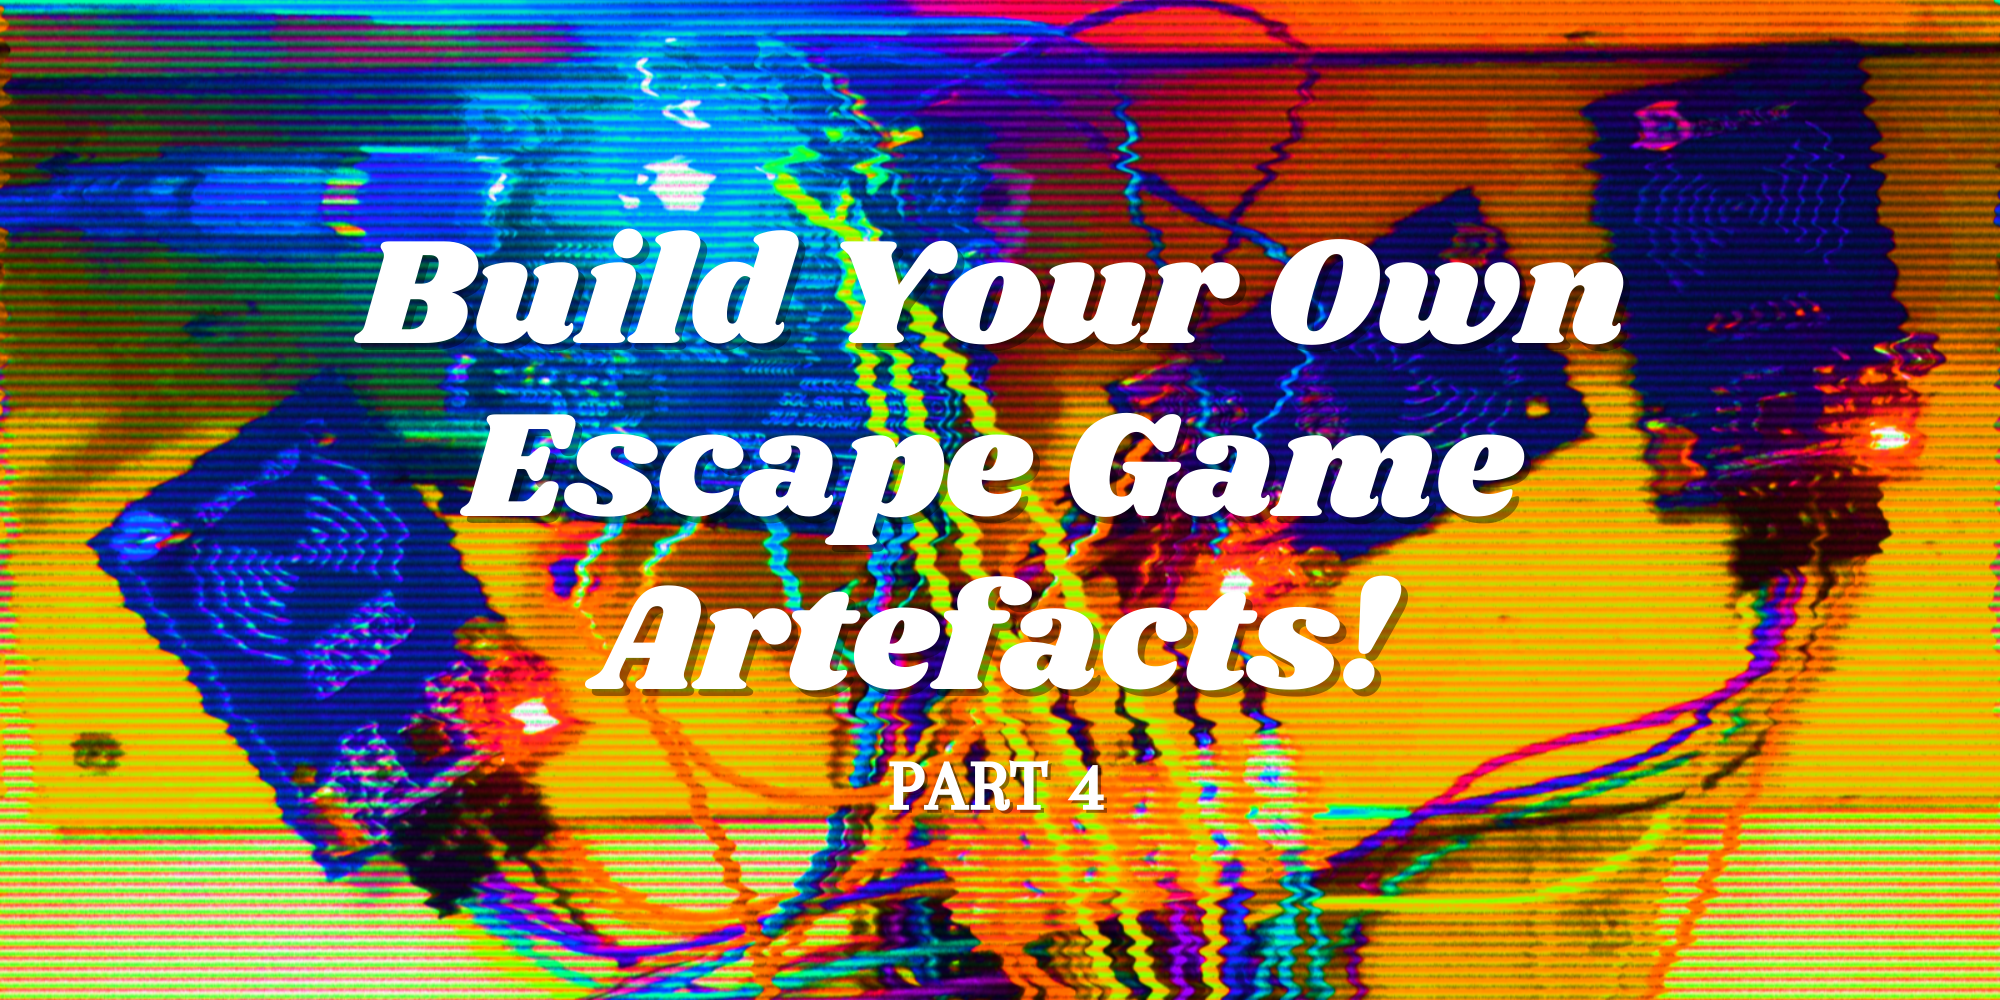 Build Your Own Escape Game Artefacts!